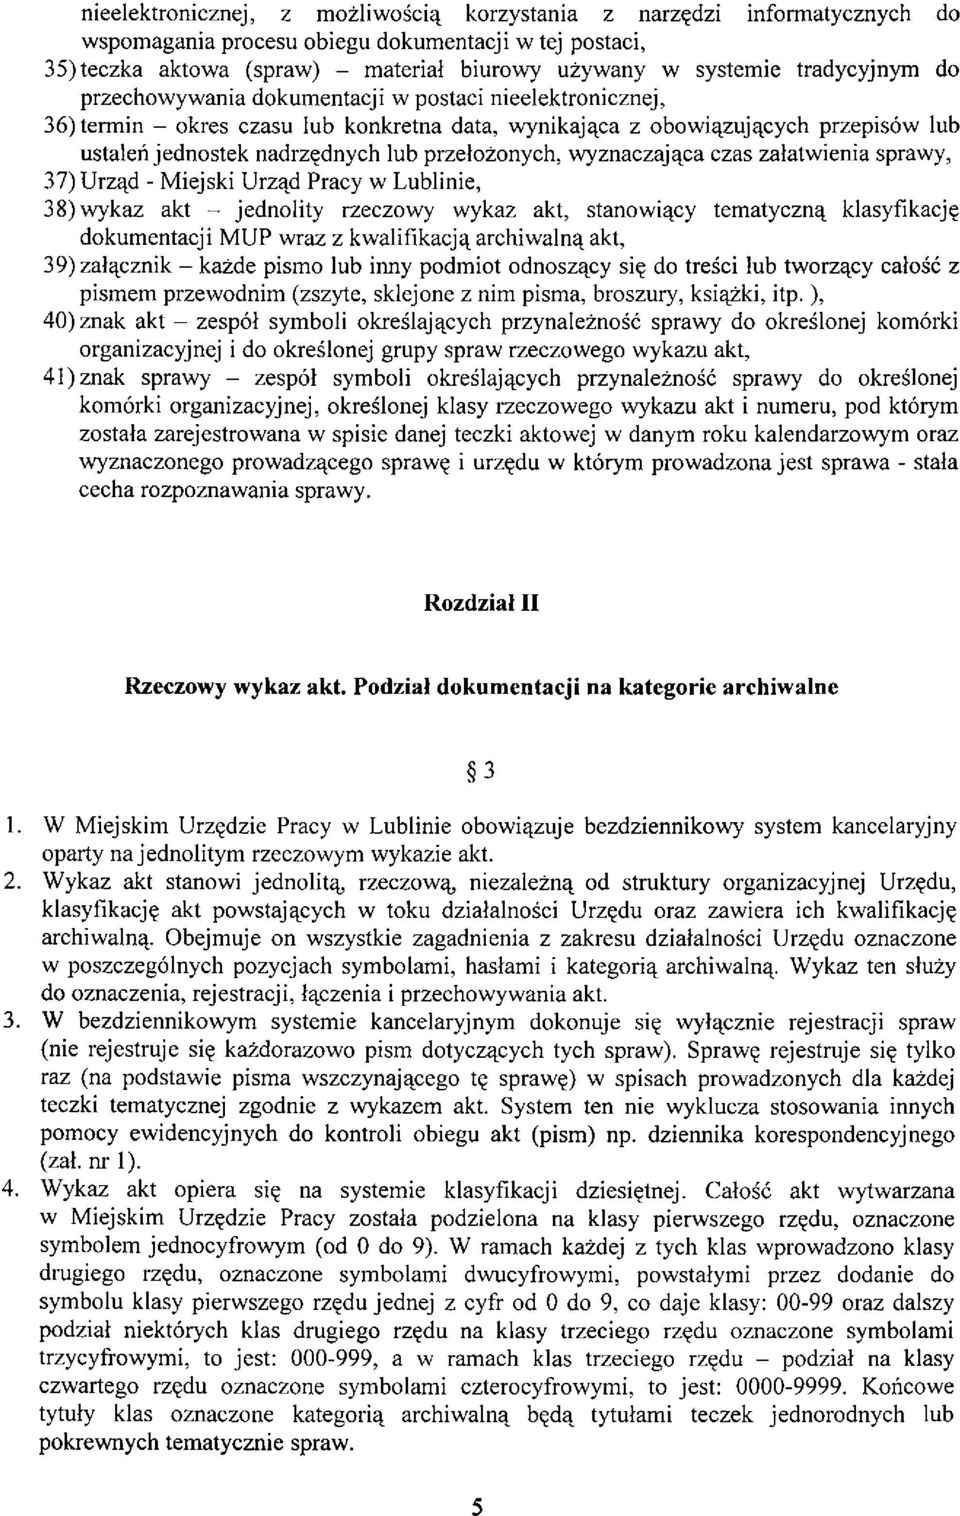 przełożonych, wyznaczająca czas załatwienia sprawy, 37) Urząd - Miejski Urząd Pracy w Lublinie, 38) wykaz akt - jednolity rzeczowy wykaz akt, stanowiący tematyczną klasyfikację dokumentacji MUP wraz